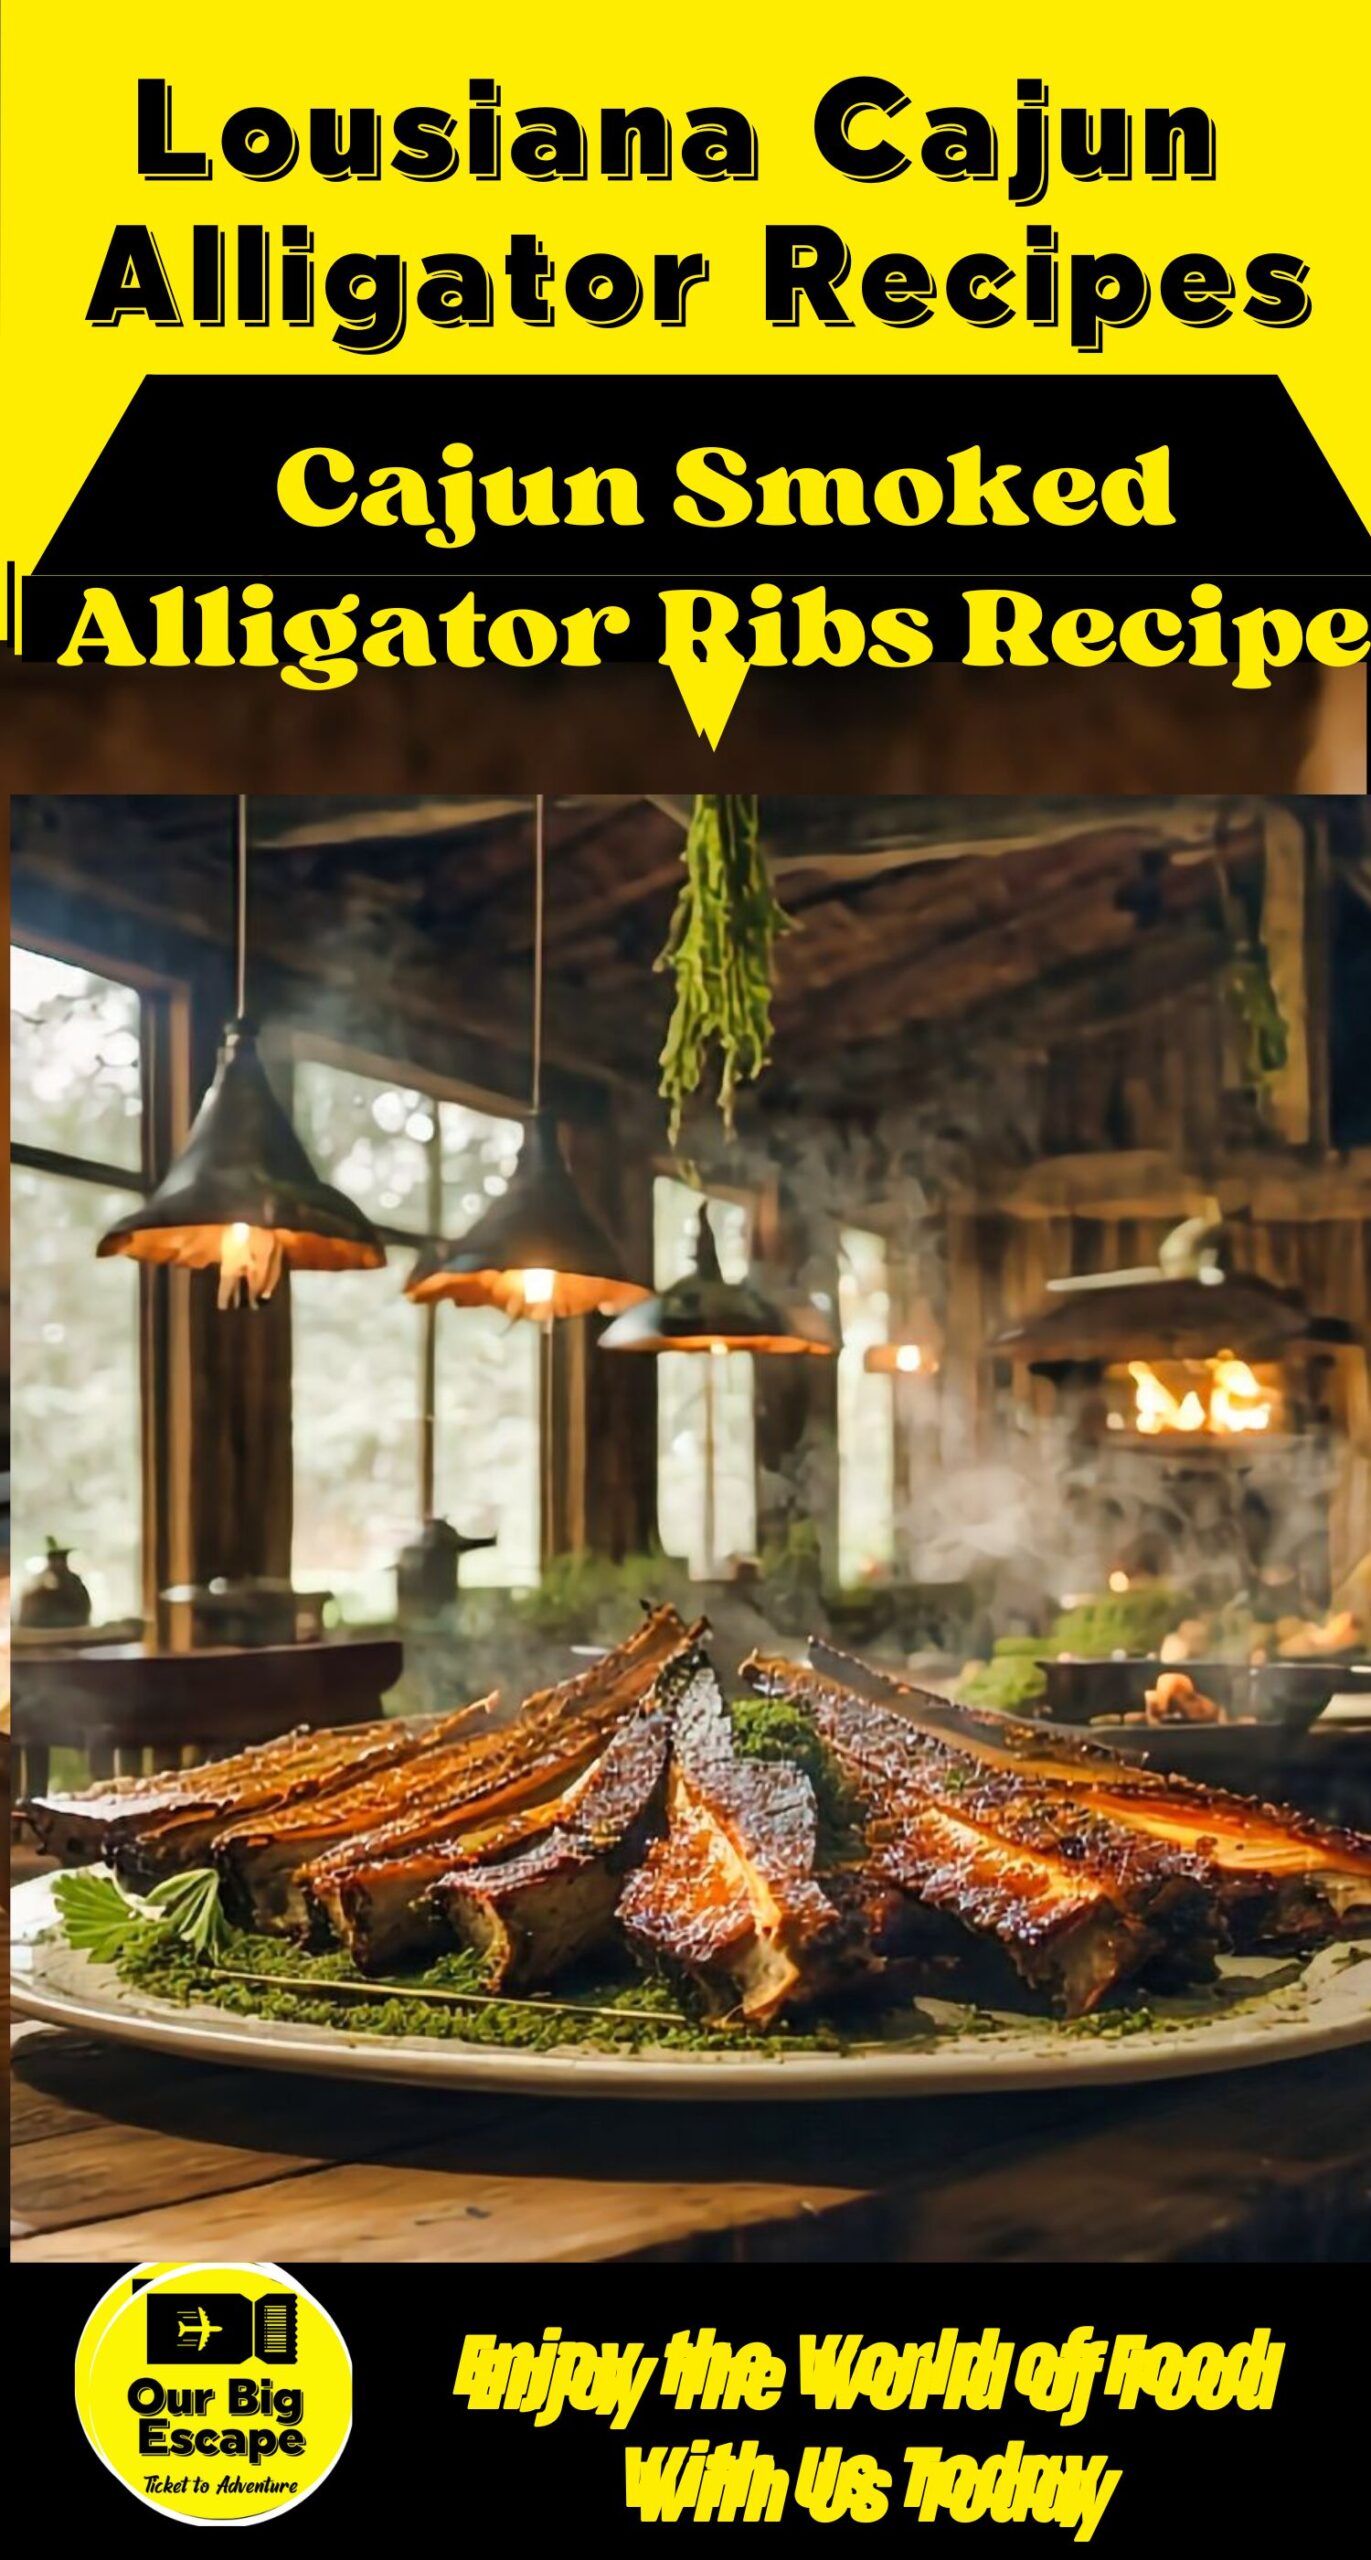 _Cajun Smoked Alligator Ribs Recipe